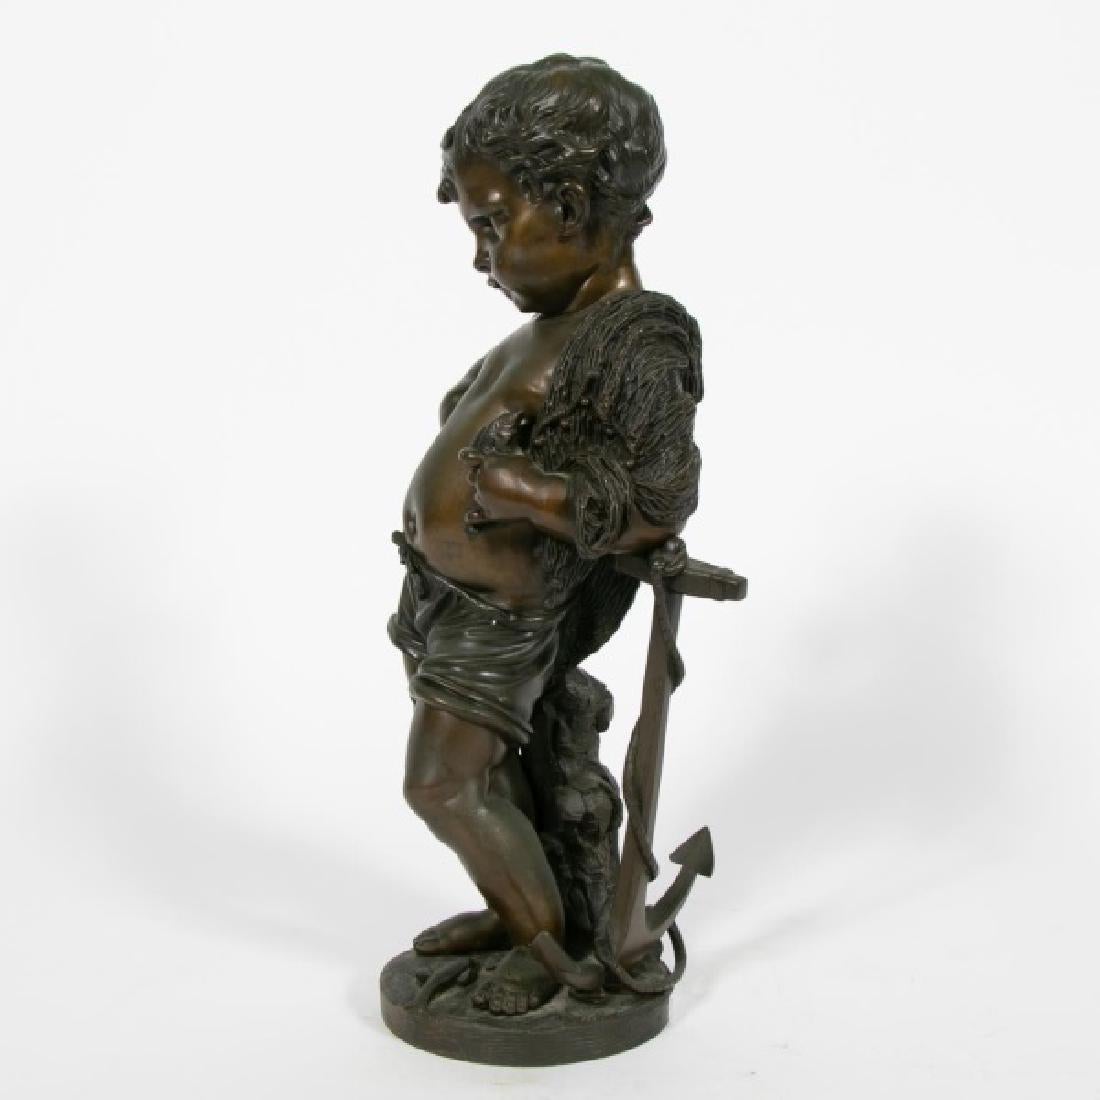 Ende 19.-20. Jh., kontinentale Schule, französisch; gegossene Bronzeskulptur; stellt eine gut modellierte Figur eines Jungen dar, der in einem Netz drapiert ist, sein Arm ruht auf einem Anker und er hält einen Fisch; auf einem runden Sockel mit